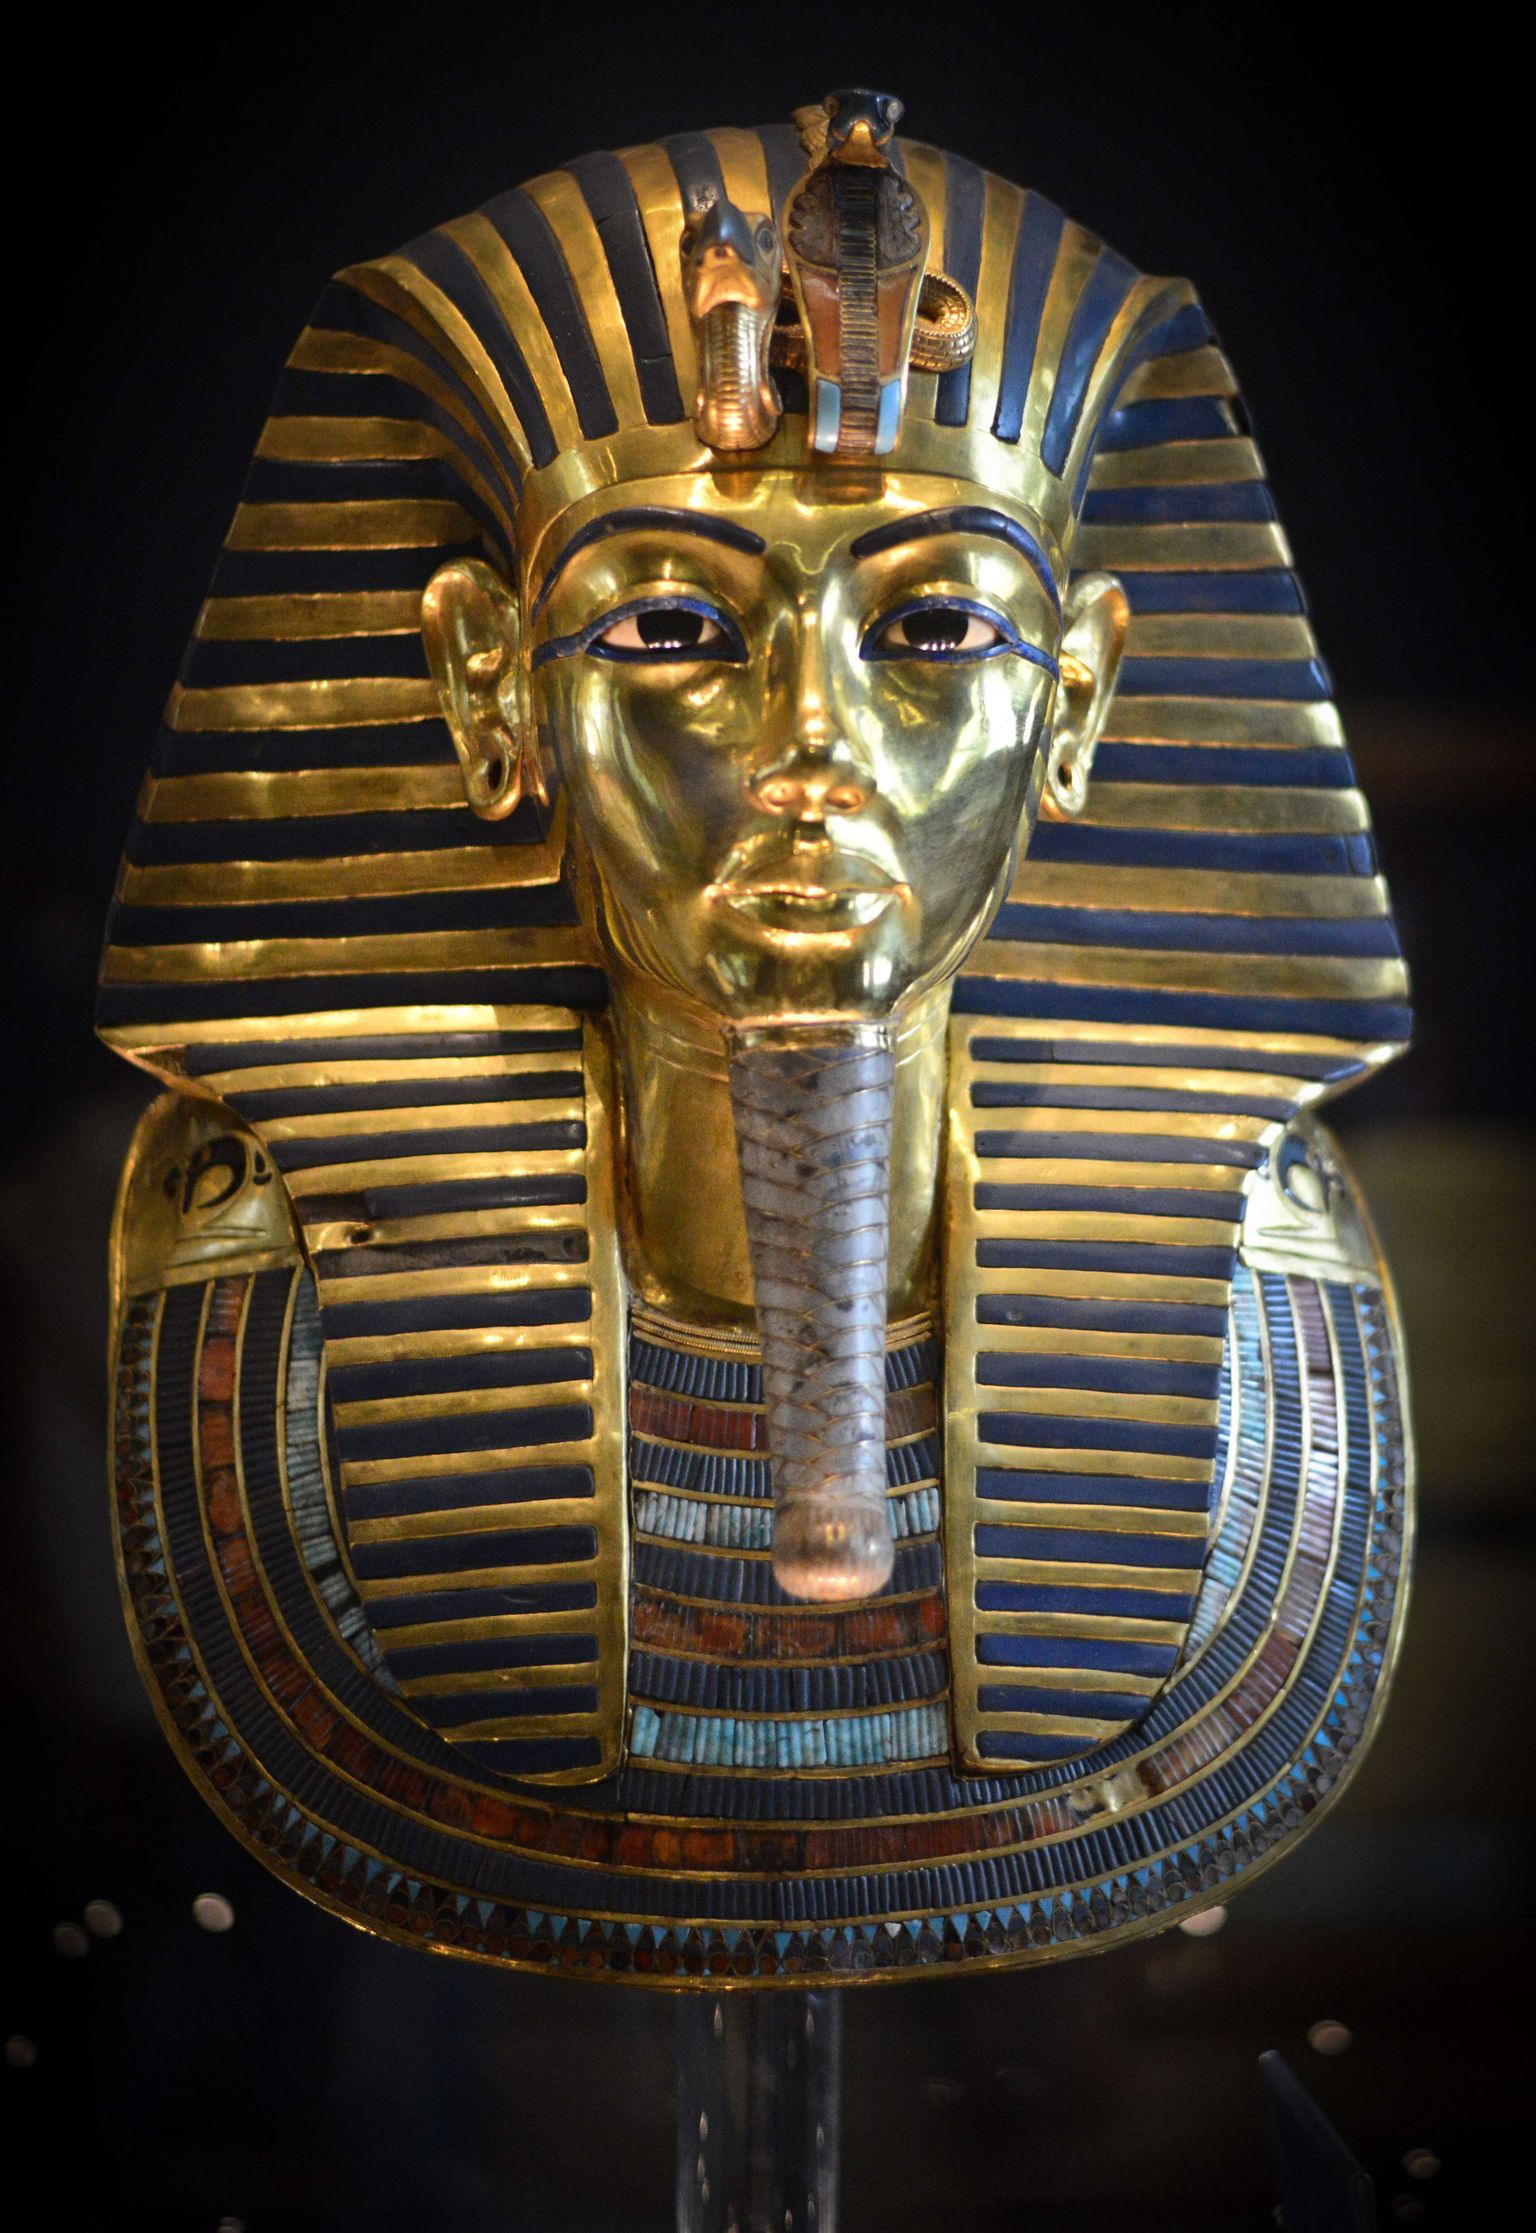 Vana-Egiptuse vaarao Tutanhamoni kullast matmismask Kairo Egiptuse muuseumis. Foto on tehtud 2015